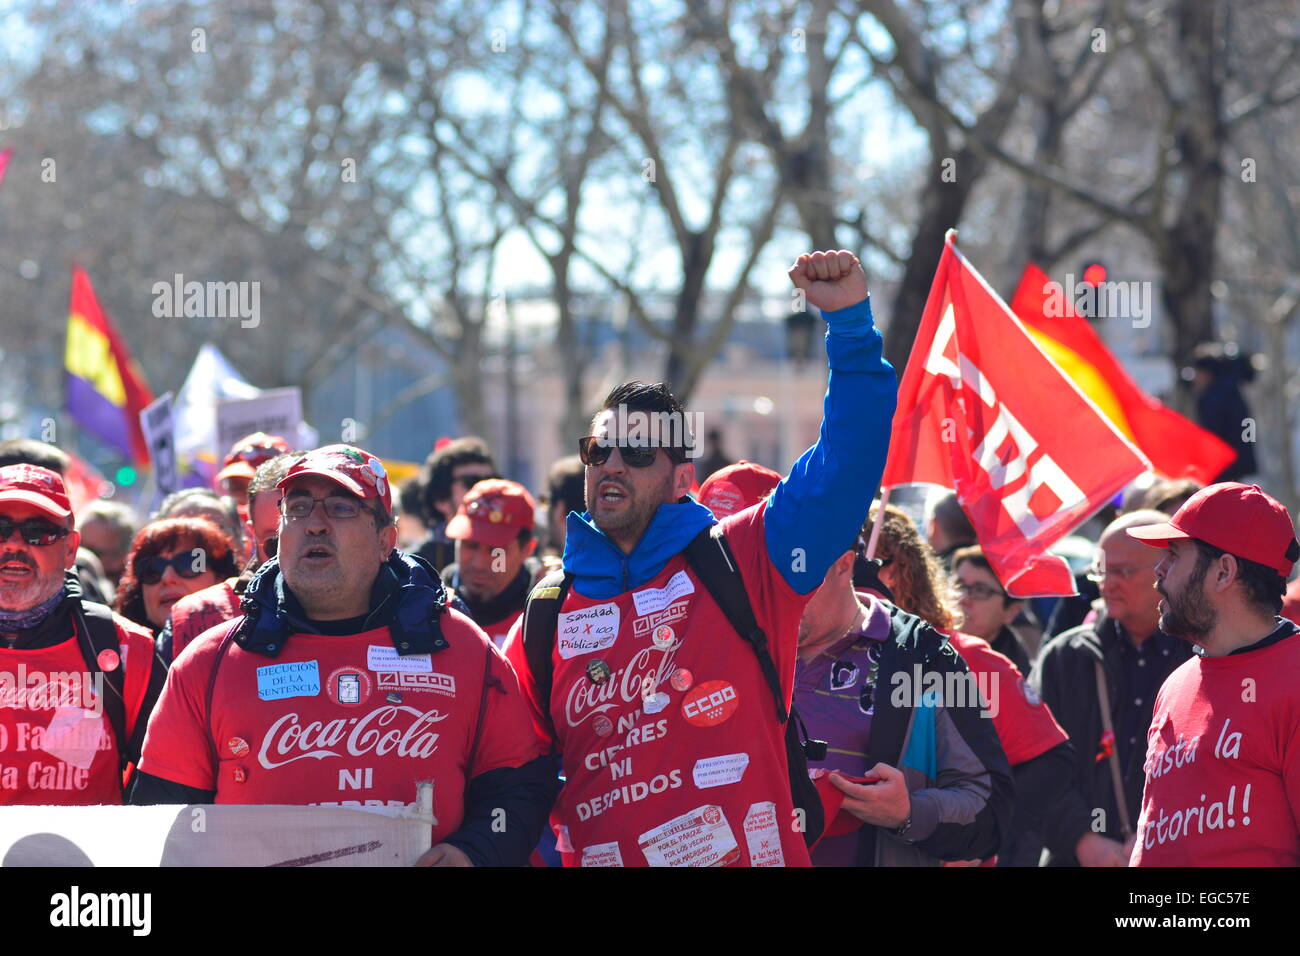 Coca Cola lavoratori protesta contro la chiusura di un impianto a Fuenlabrada, nel corso di una manifestazione a Madrid. 22nd, febbraio 2015. Spagna. Credito: Marcos del Mazo/Alamy Live News Foto Stock